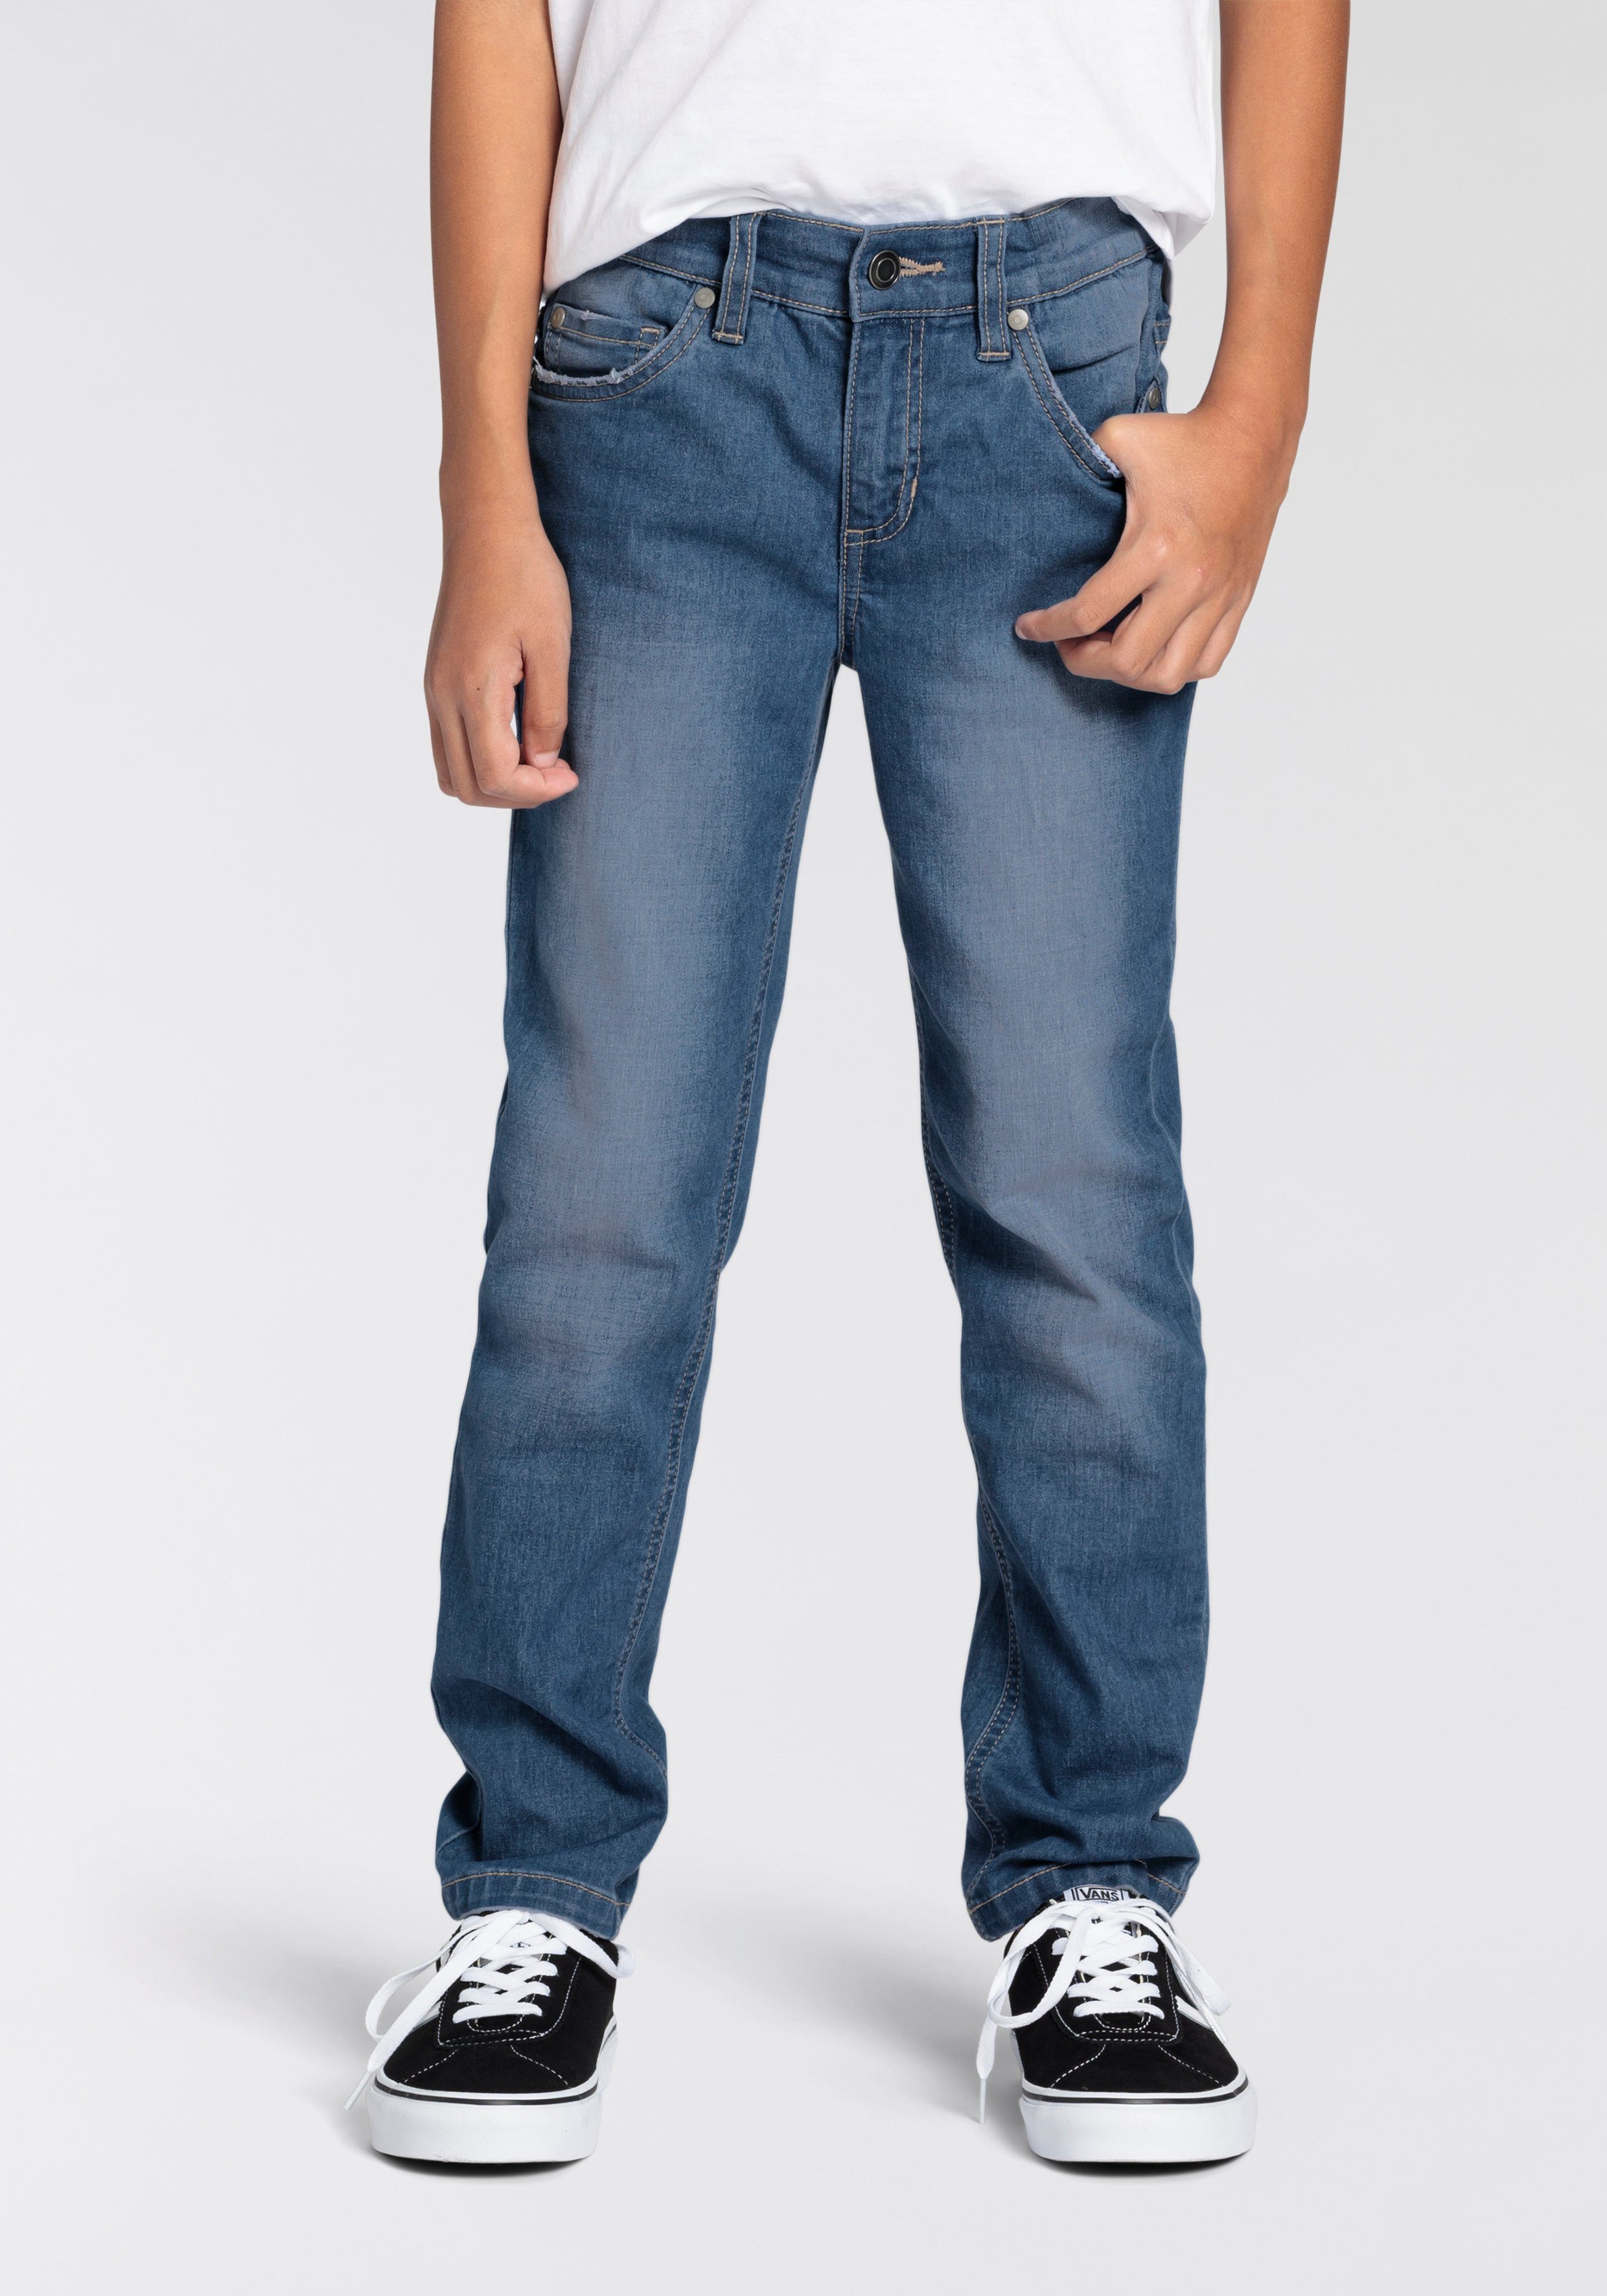 DELMAO Stretch-Jeans für Jungen, im bequemen Sweatdenim